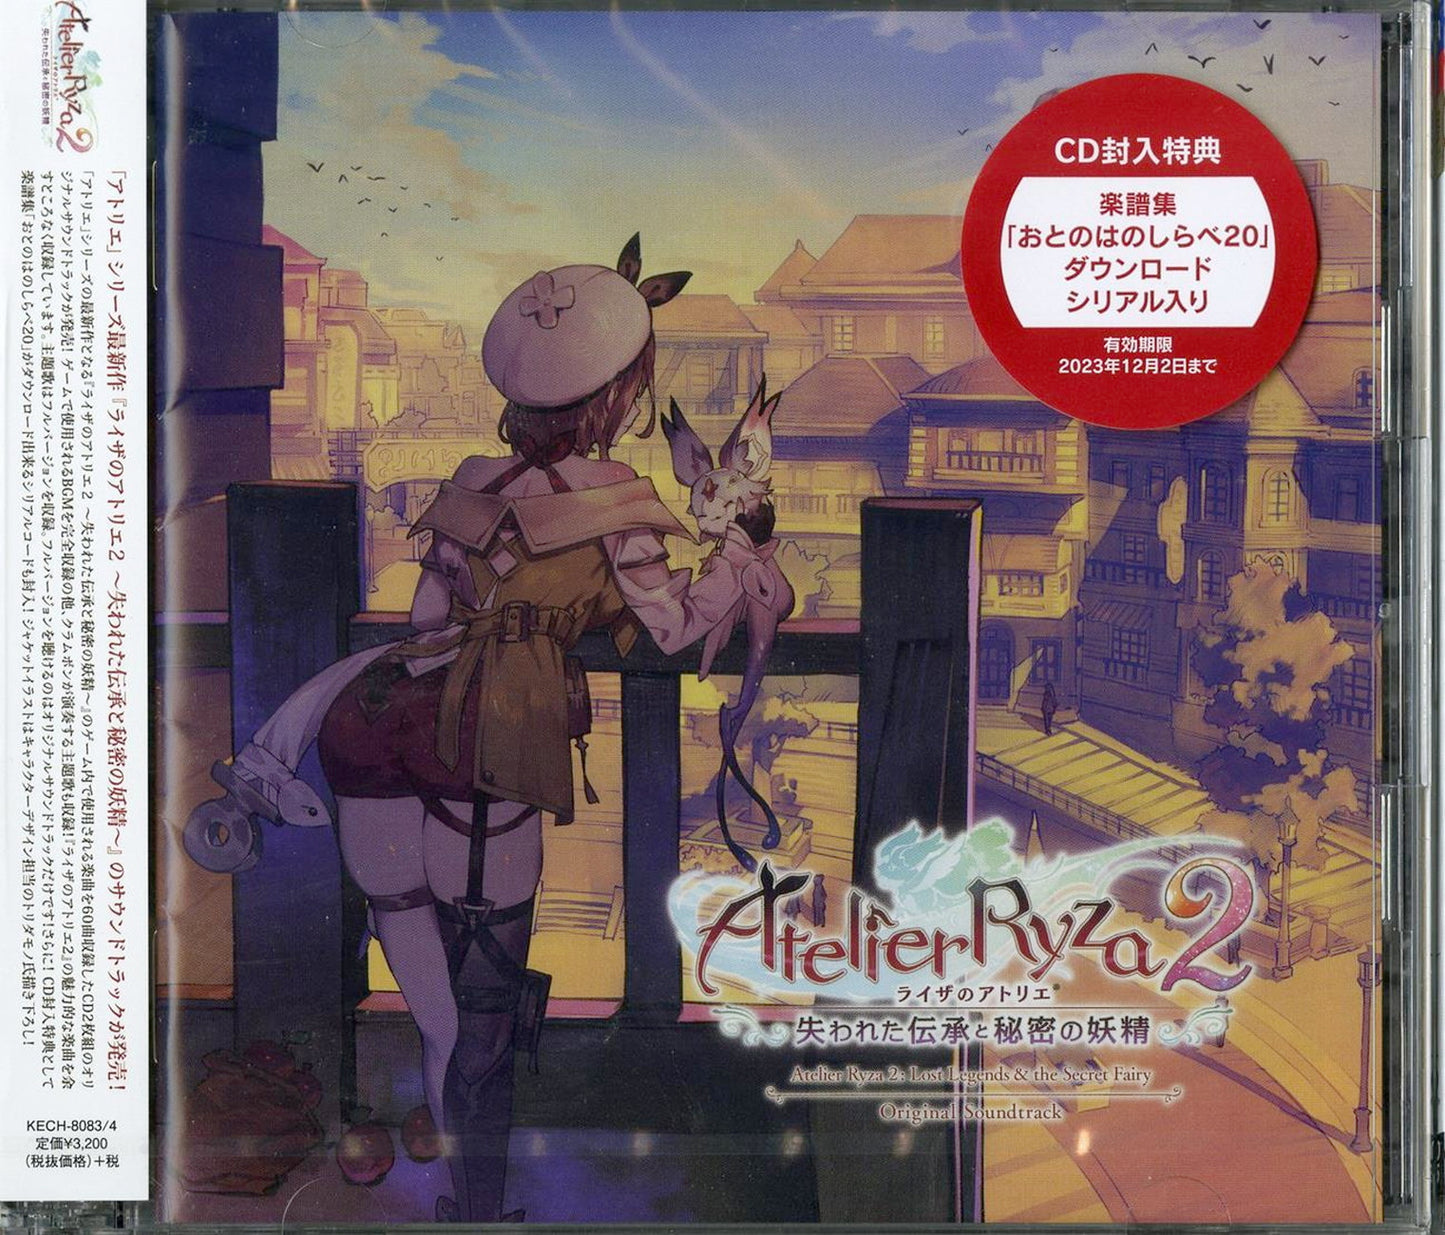 Atelier Ryza 2: Lost Legends & The Secret Fairy - Atelier Ryza 2: Lost Legends & The Secret Fairy Original Soundtrack - Japan  2 CD